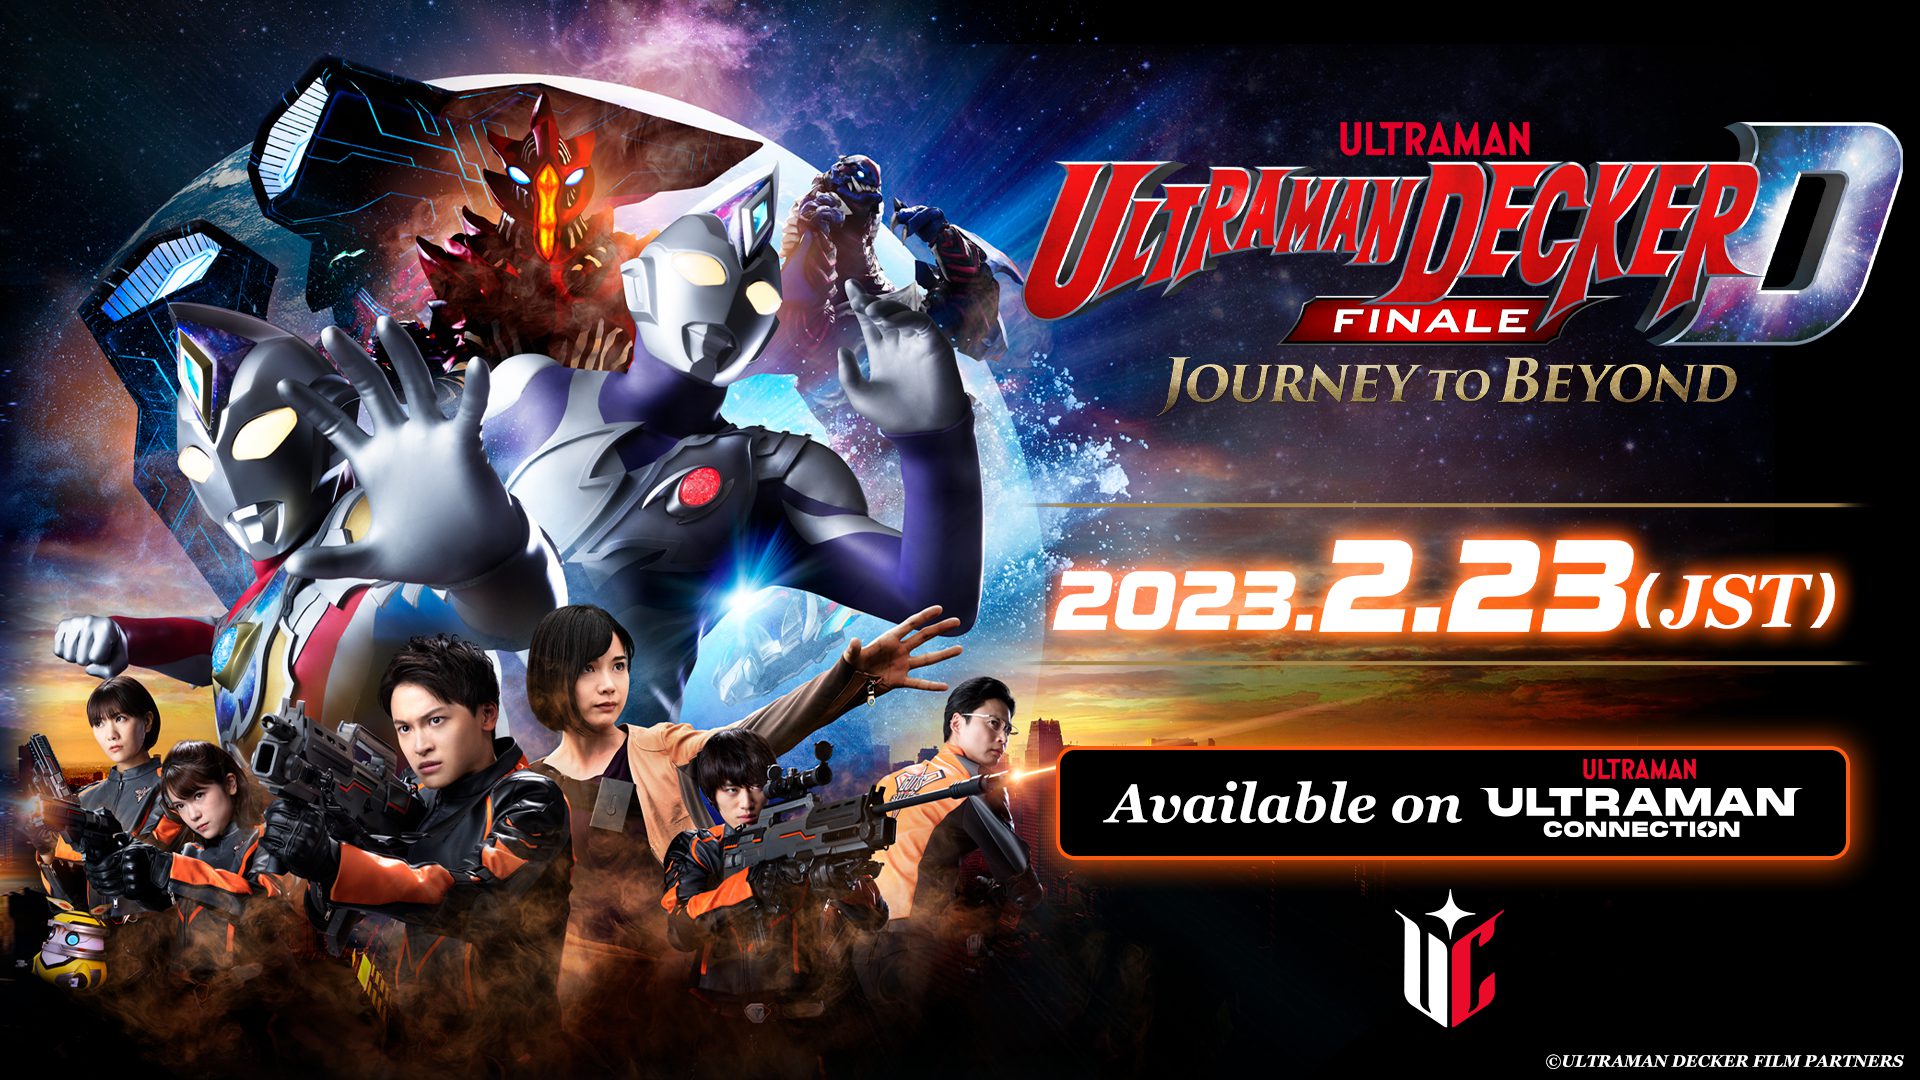 Ultraman Decker Finale: Journey to Beyond Rental Starts on Feb...